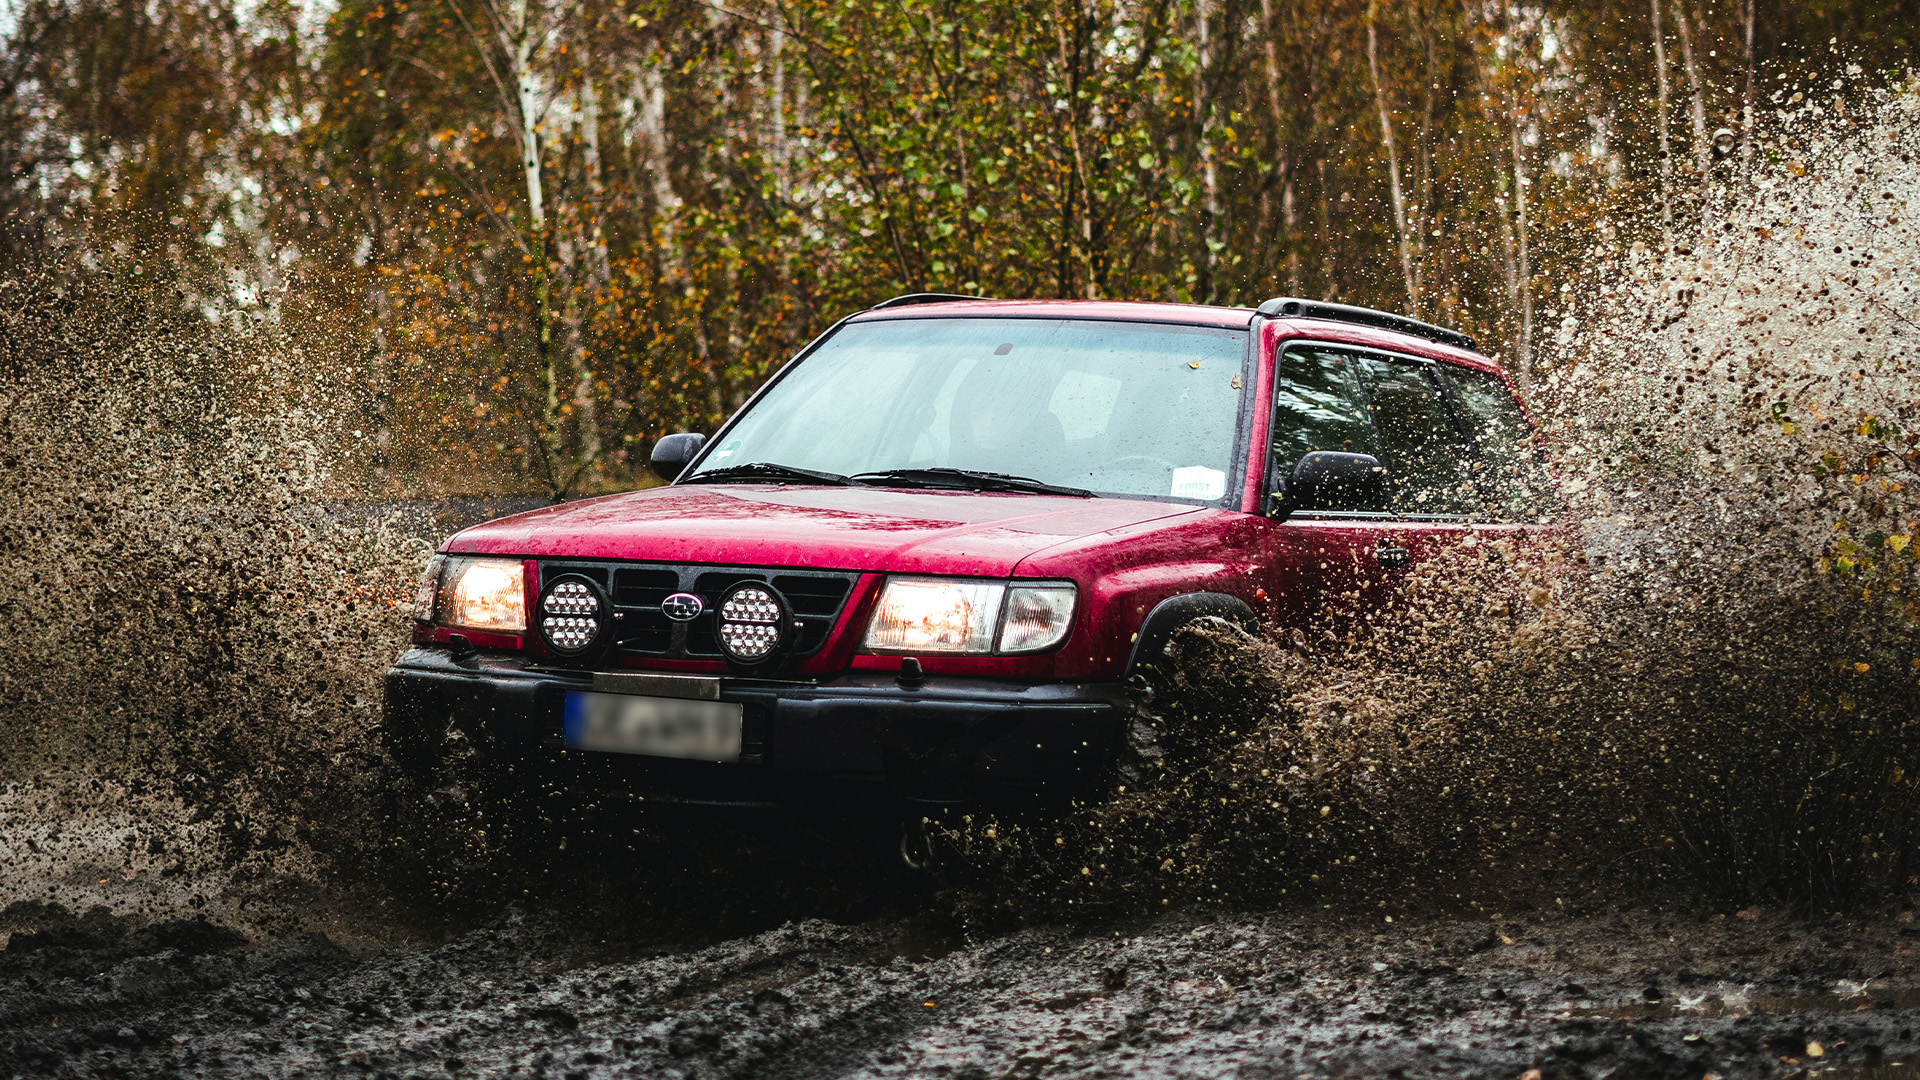 red Subaru spraying mud into the air